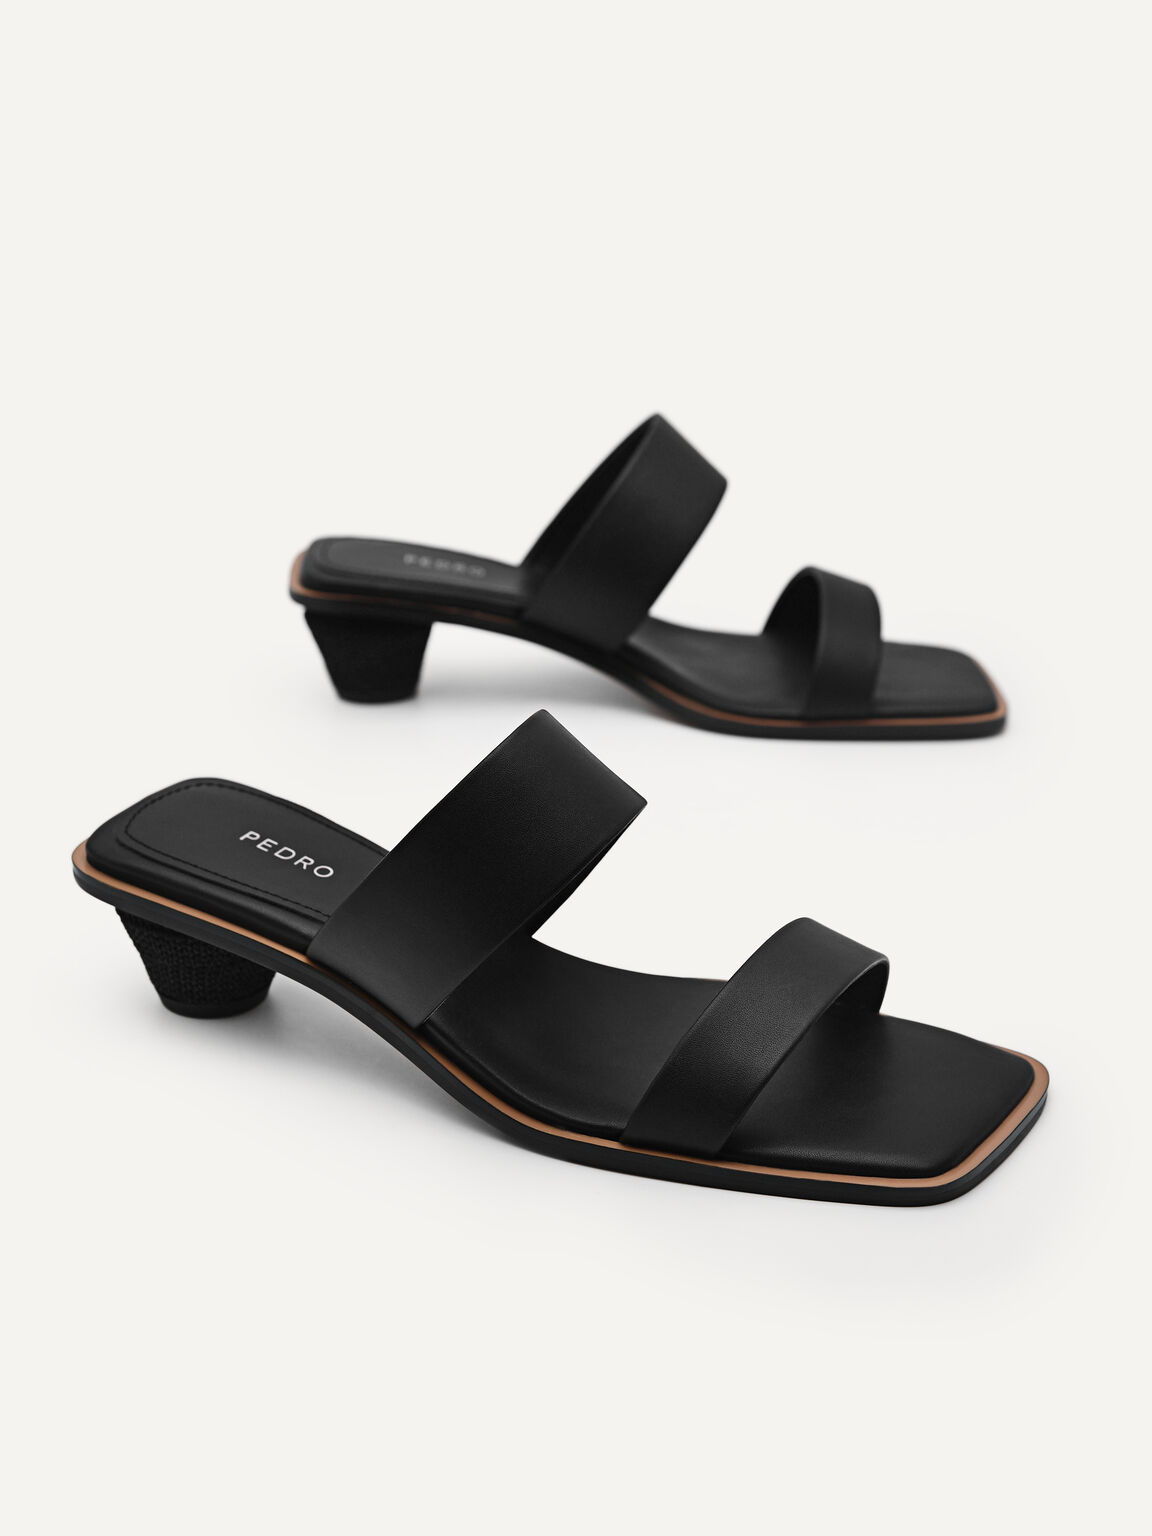 Calico Sandals, Black